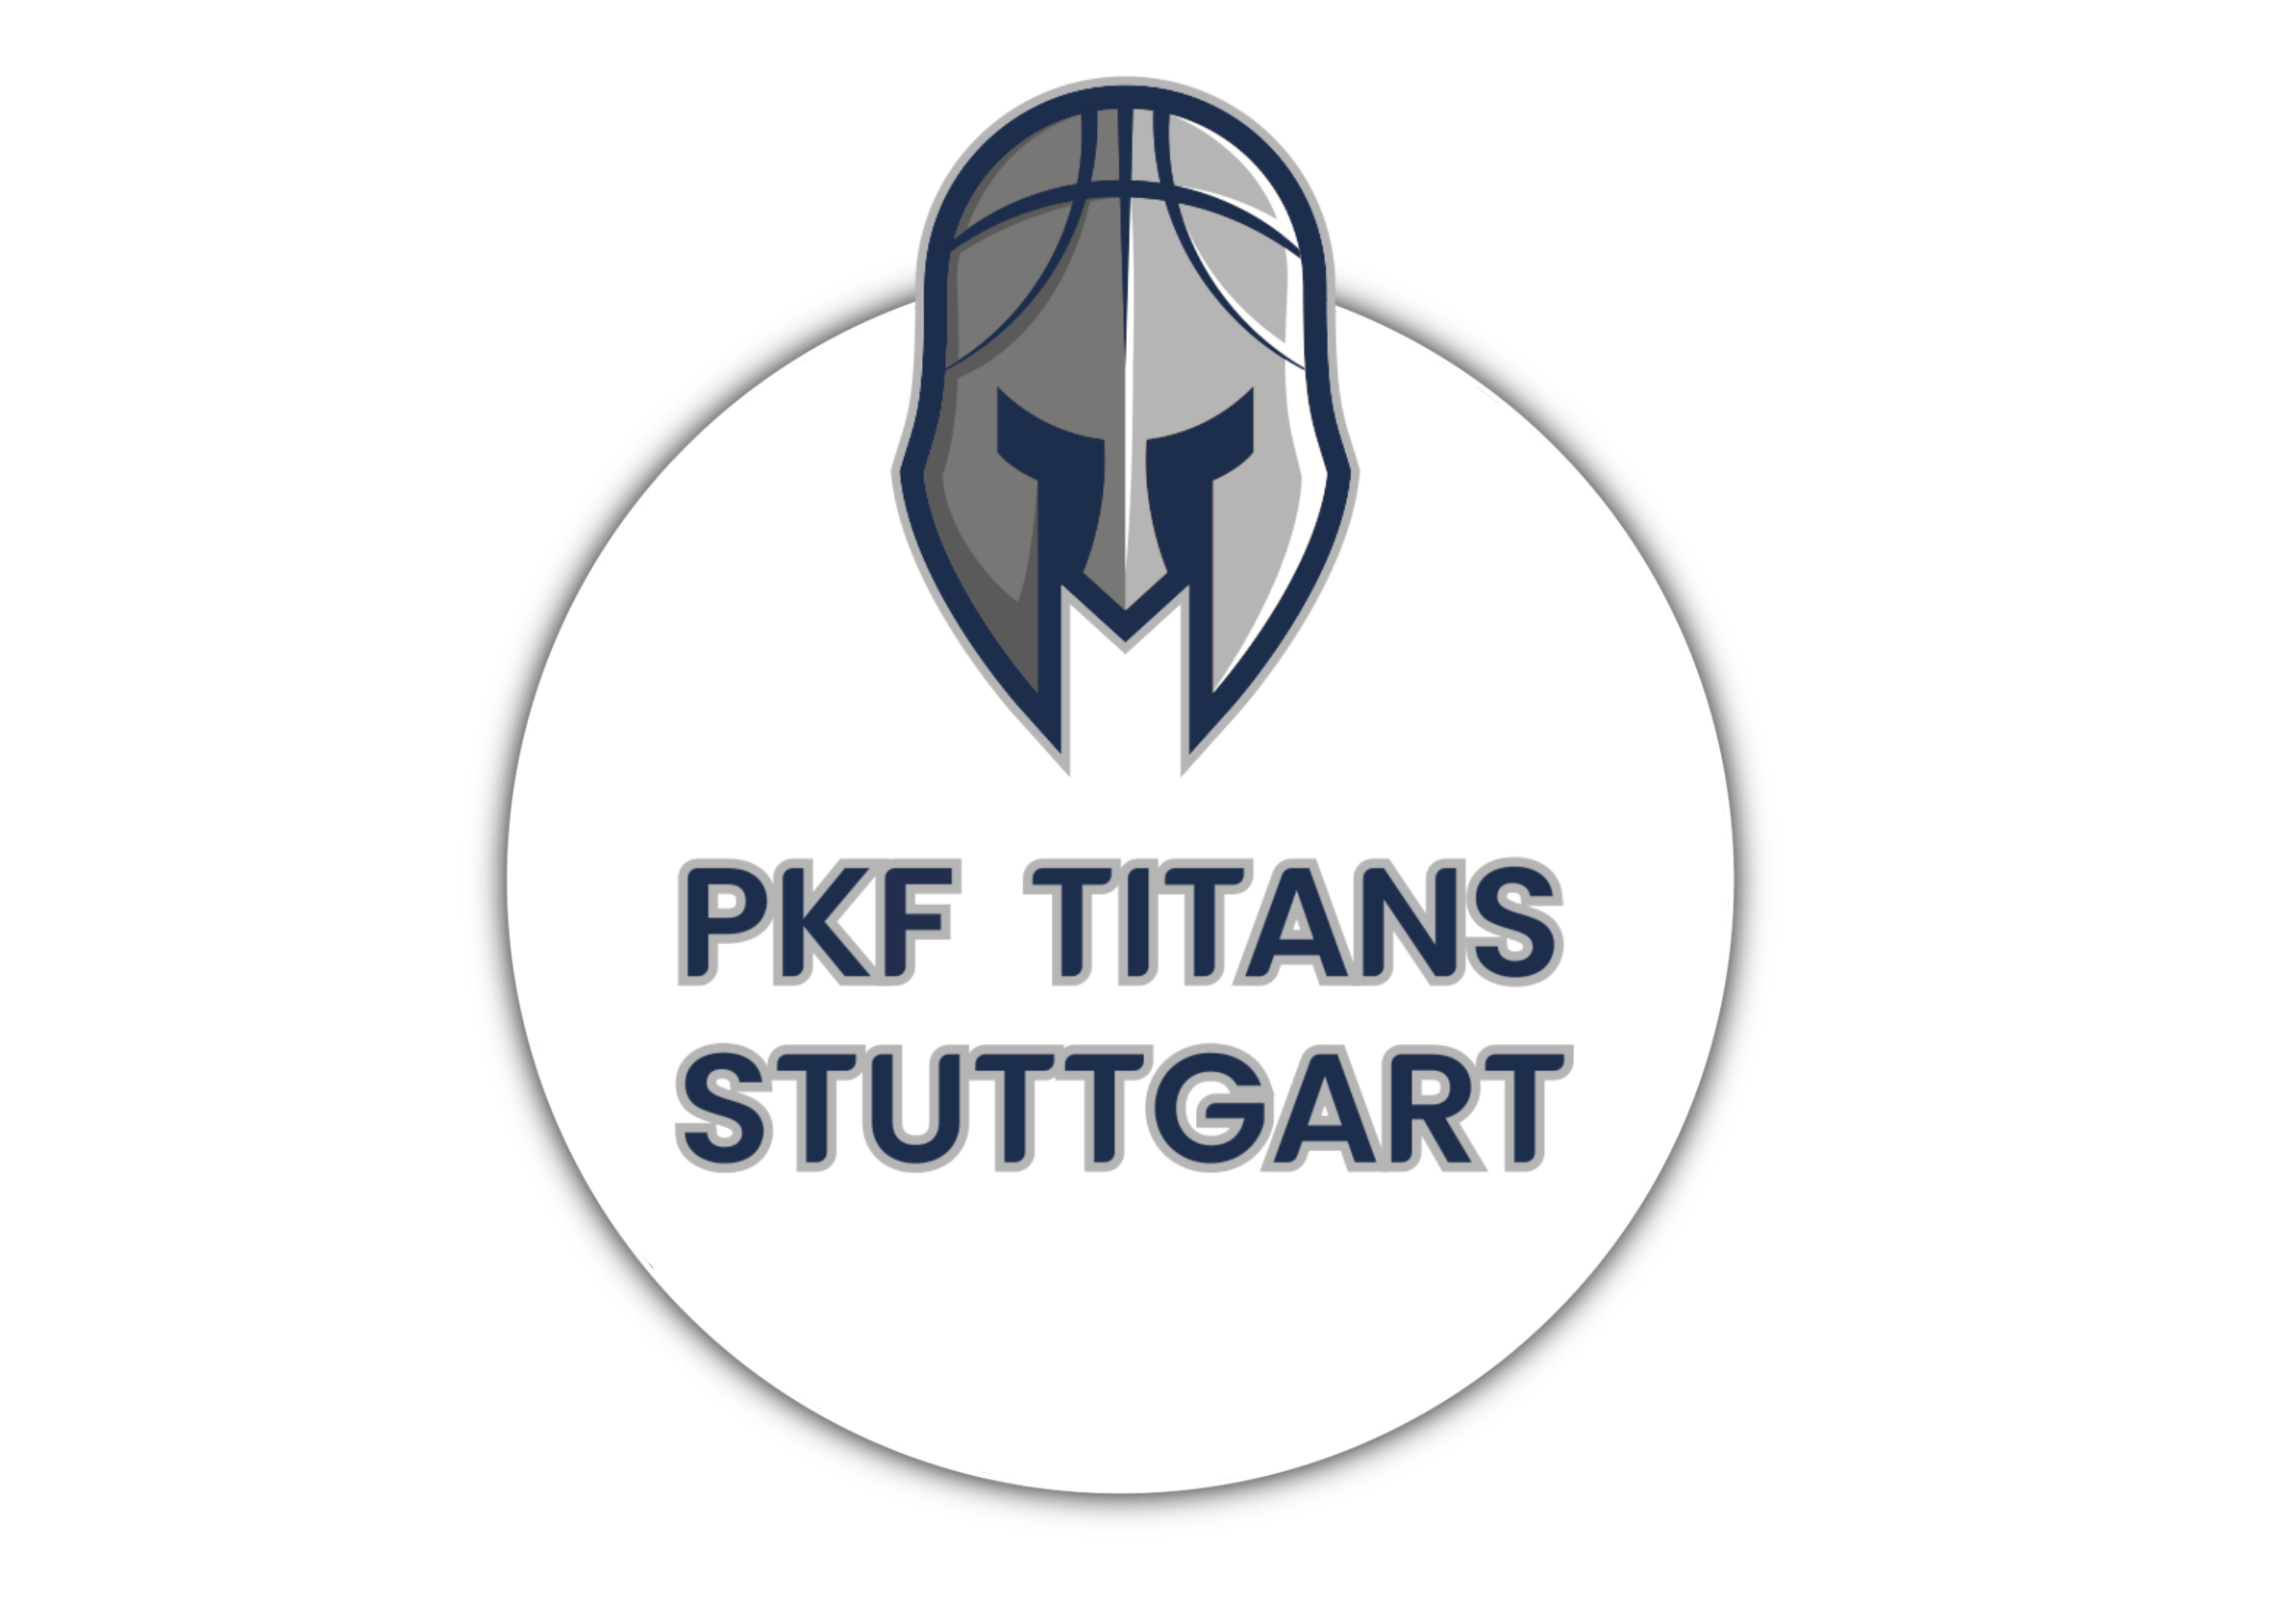 PKF TITANS STUTTGART